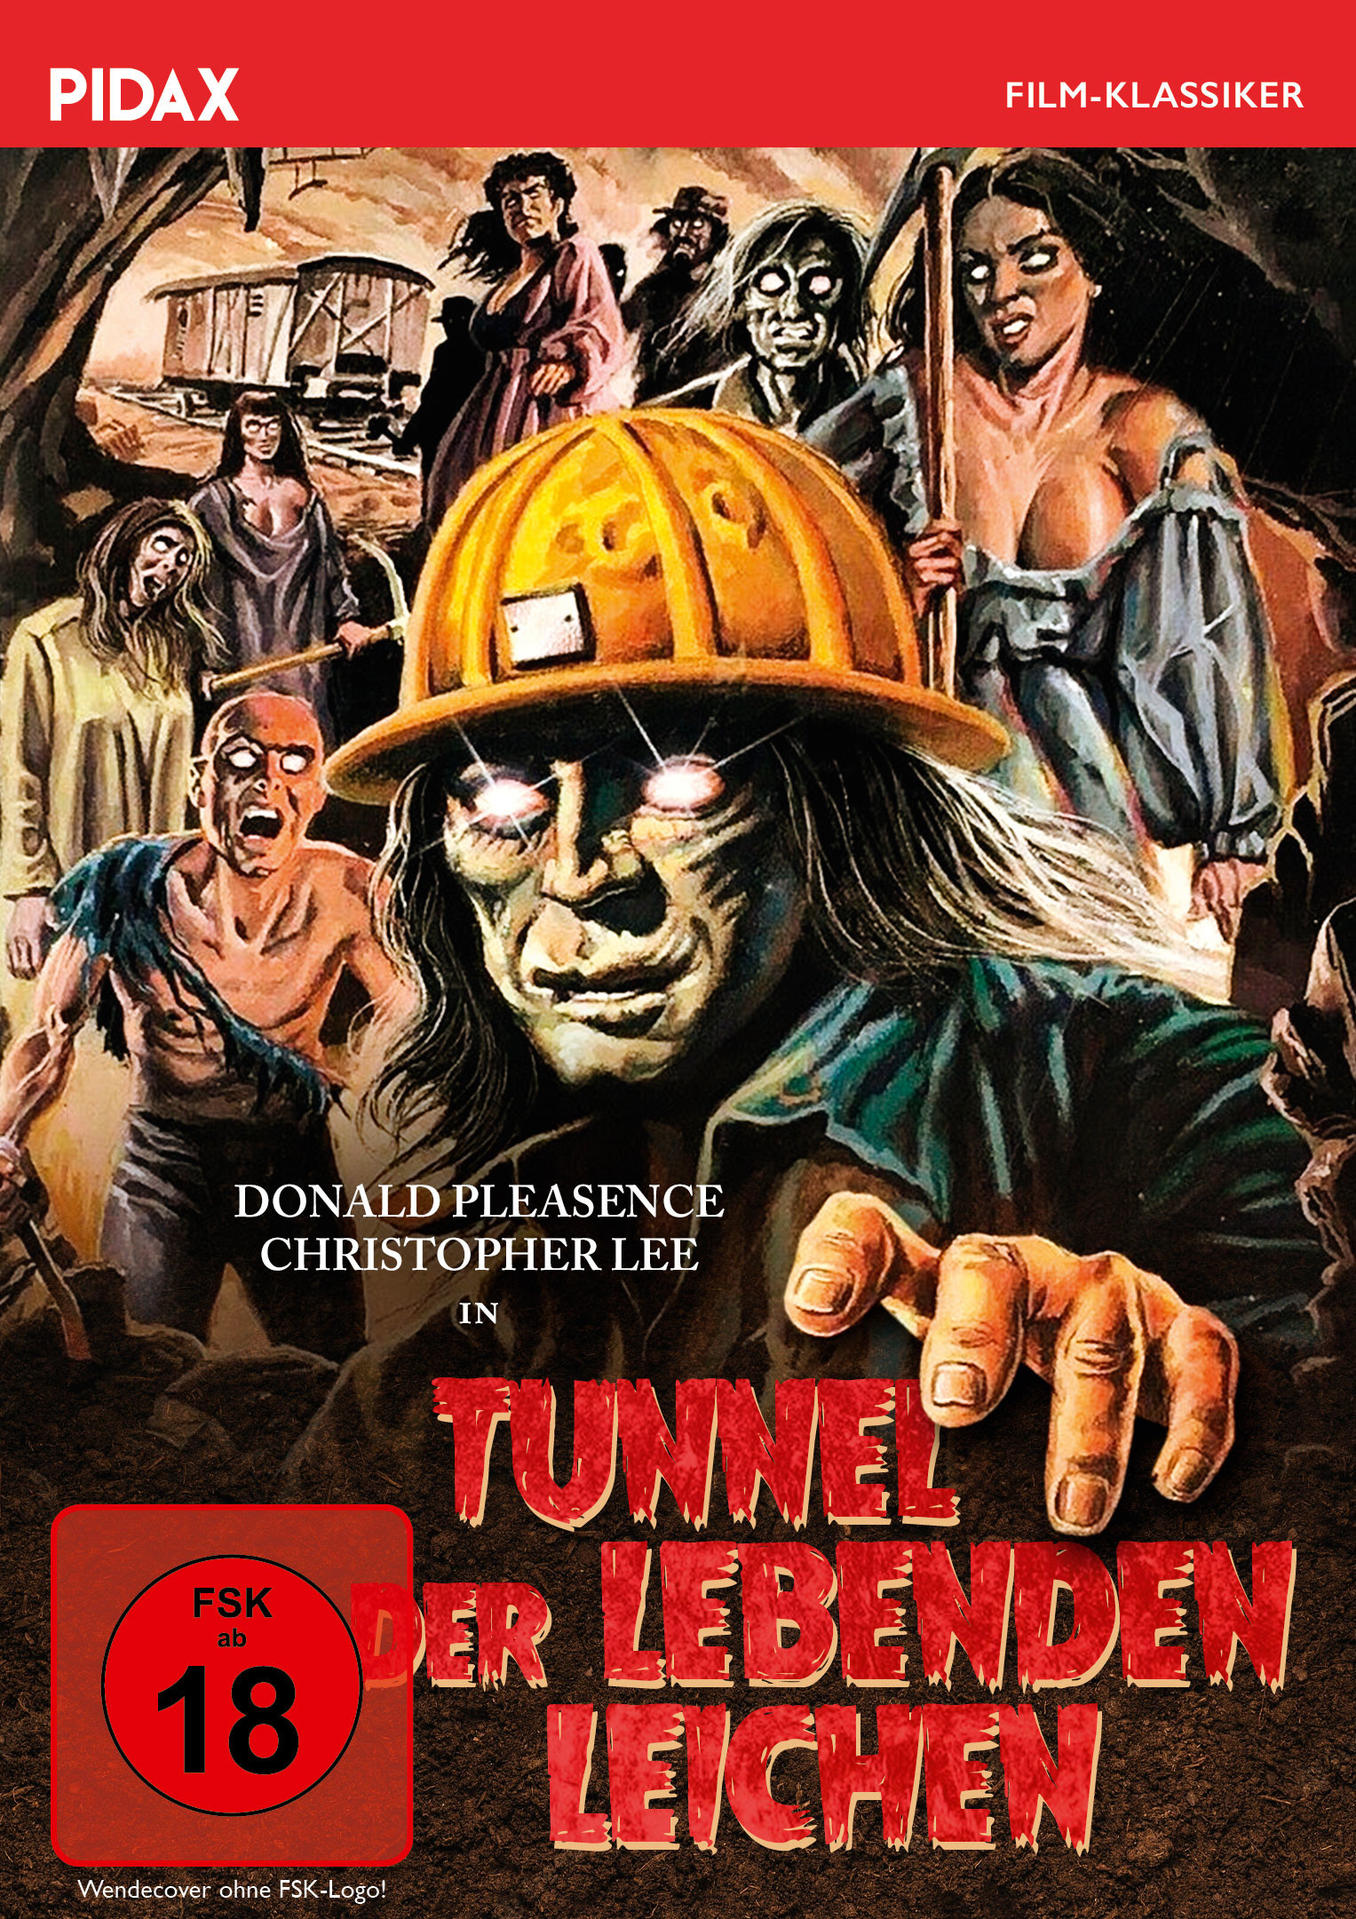 DVD der Lebenden Leichen Tunnel